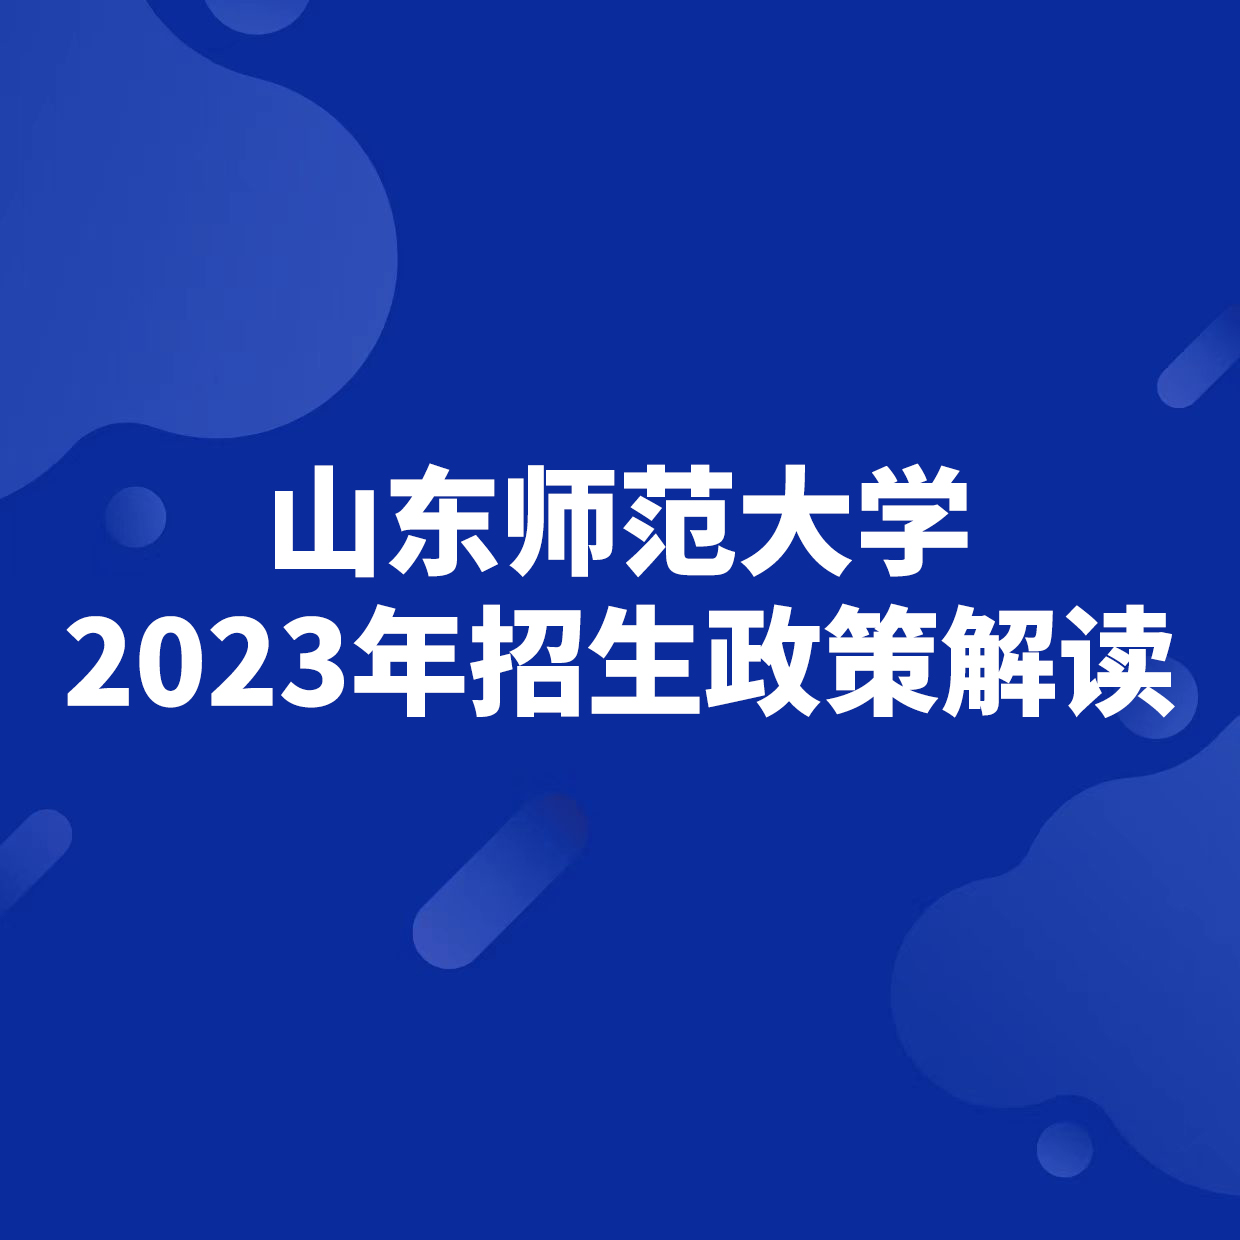 山东师范大学2023年招生政策解读